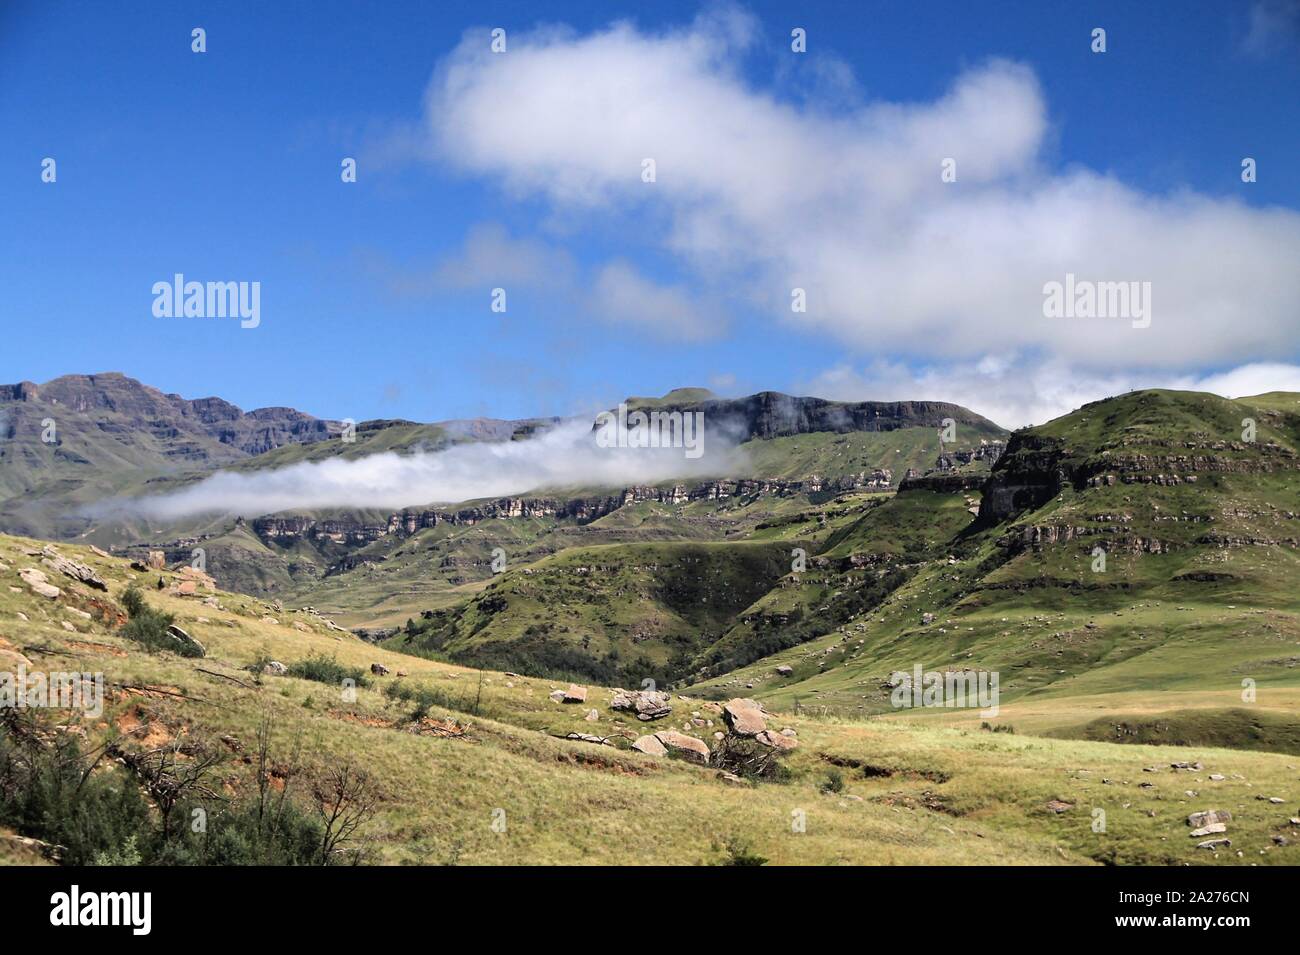 Grünes Gebirge in den Wolken Foto de stock